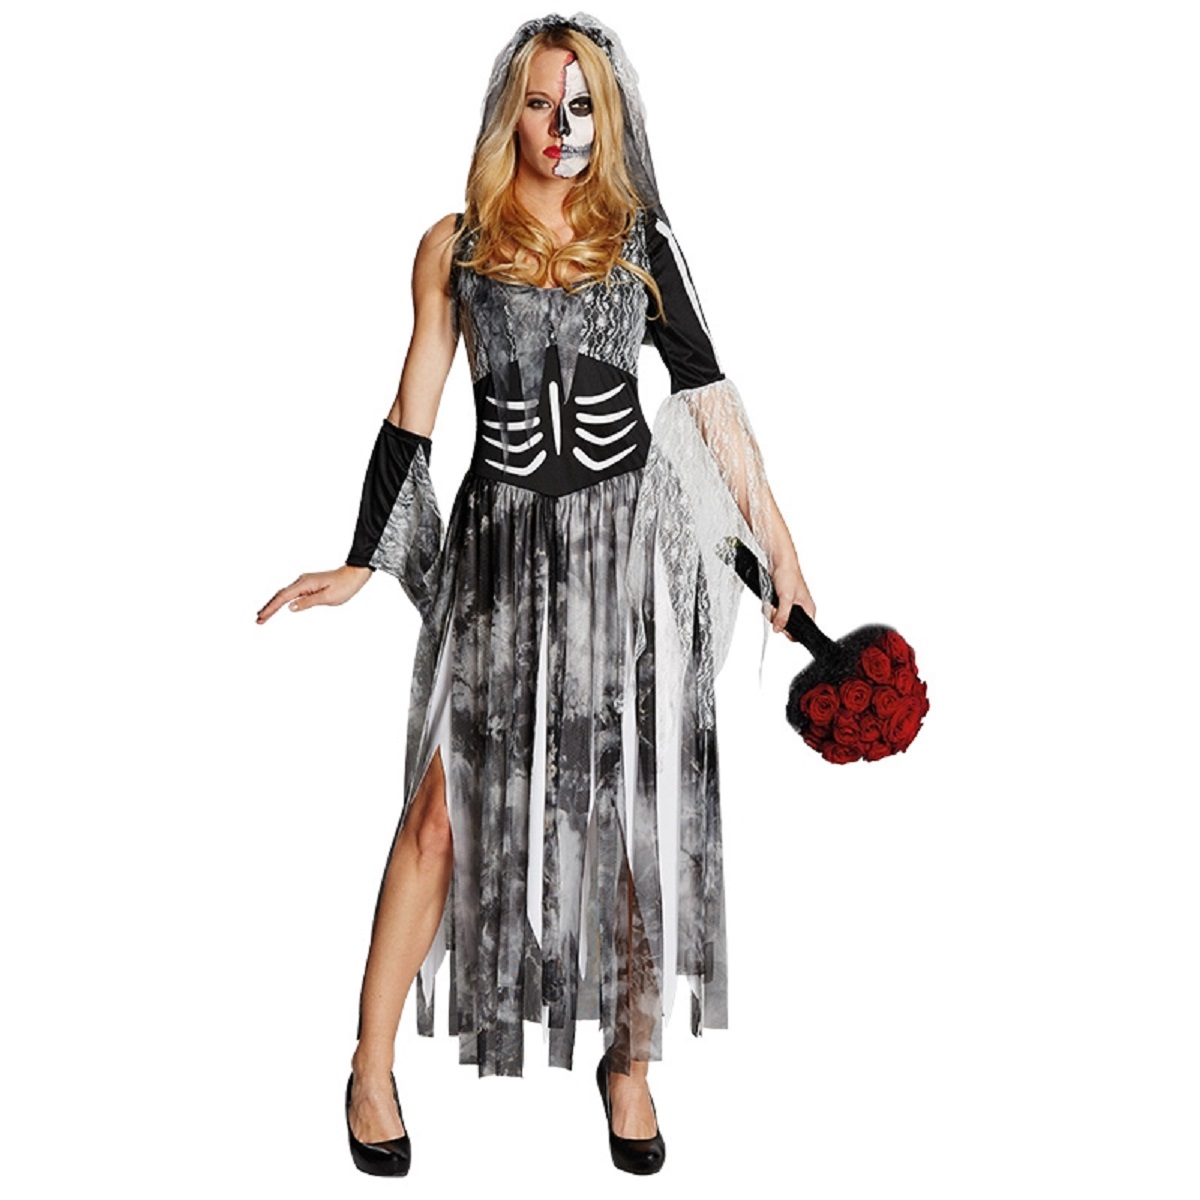 PxP 13908 - Zombiebraut, Kostüm, Gr. 36 - 48, Zombie Braut Halloween